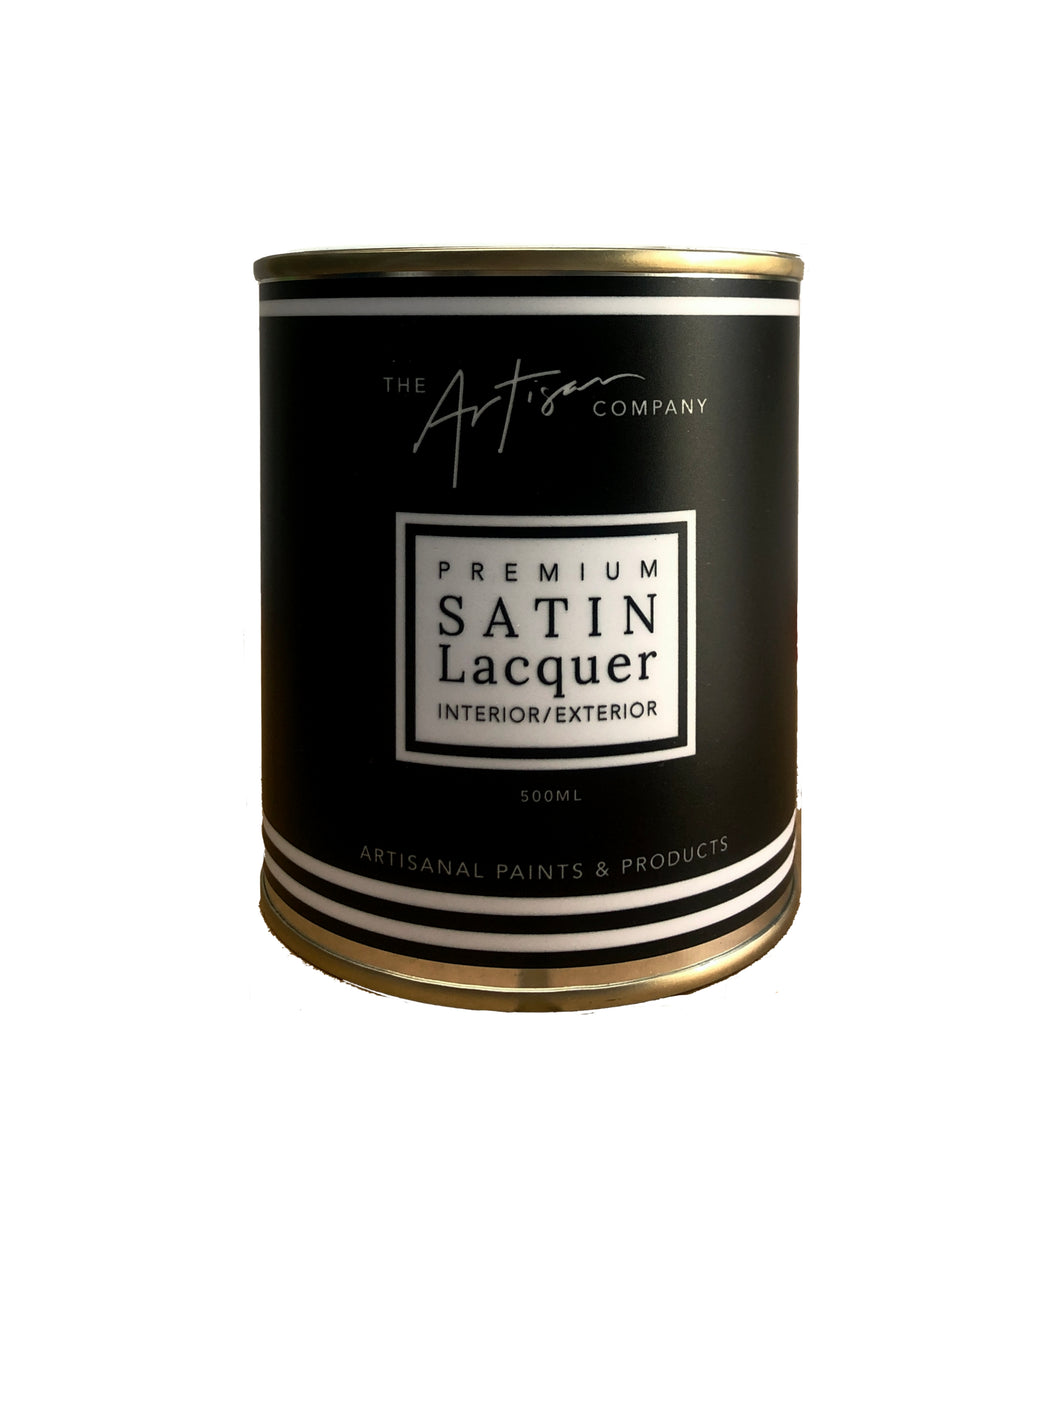 Premium Satin Lacquer